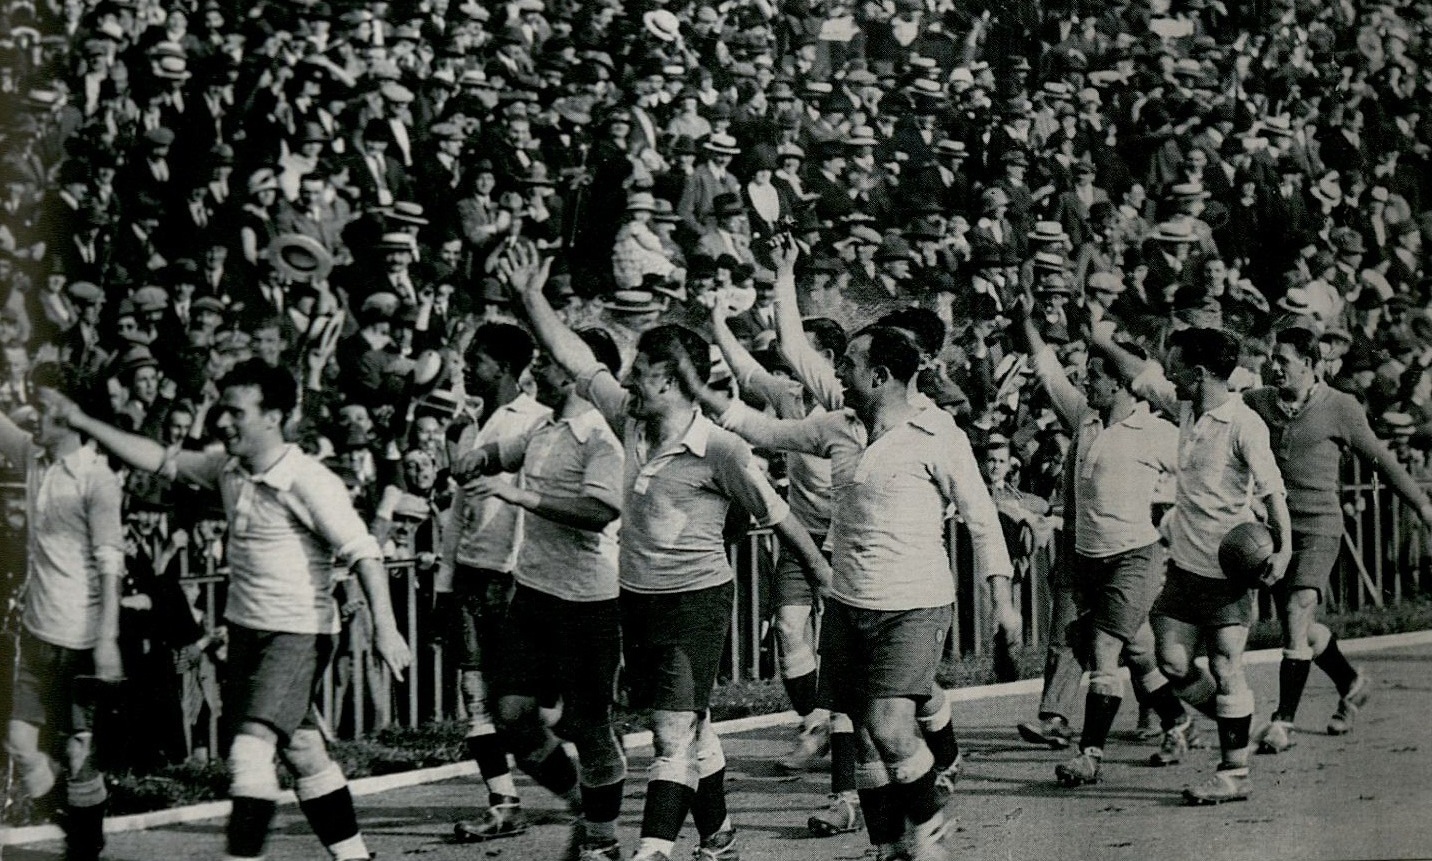 Así nació la vuelta olímpica. Año 1924, Uruguay campeón olímpico en Colombes, Francia. Los consagrados sudamericanos, asombran y saludan a la multitud y recorren alrededor de la cancha. - CONMEBOL